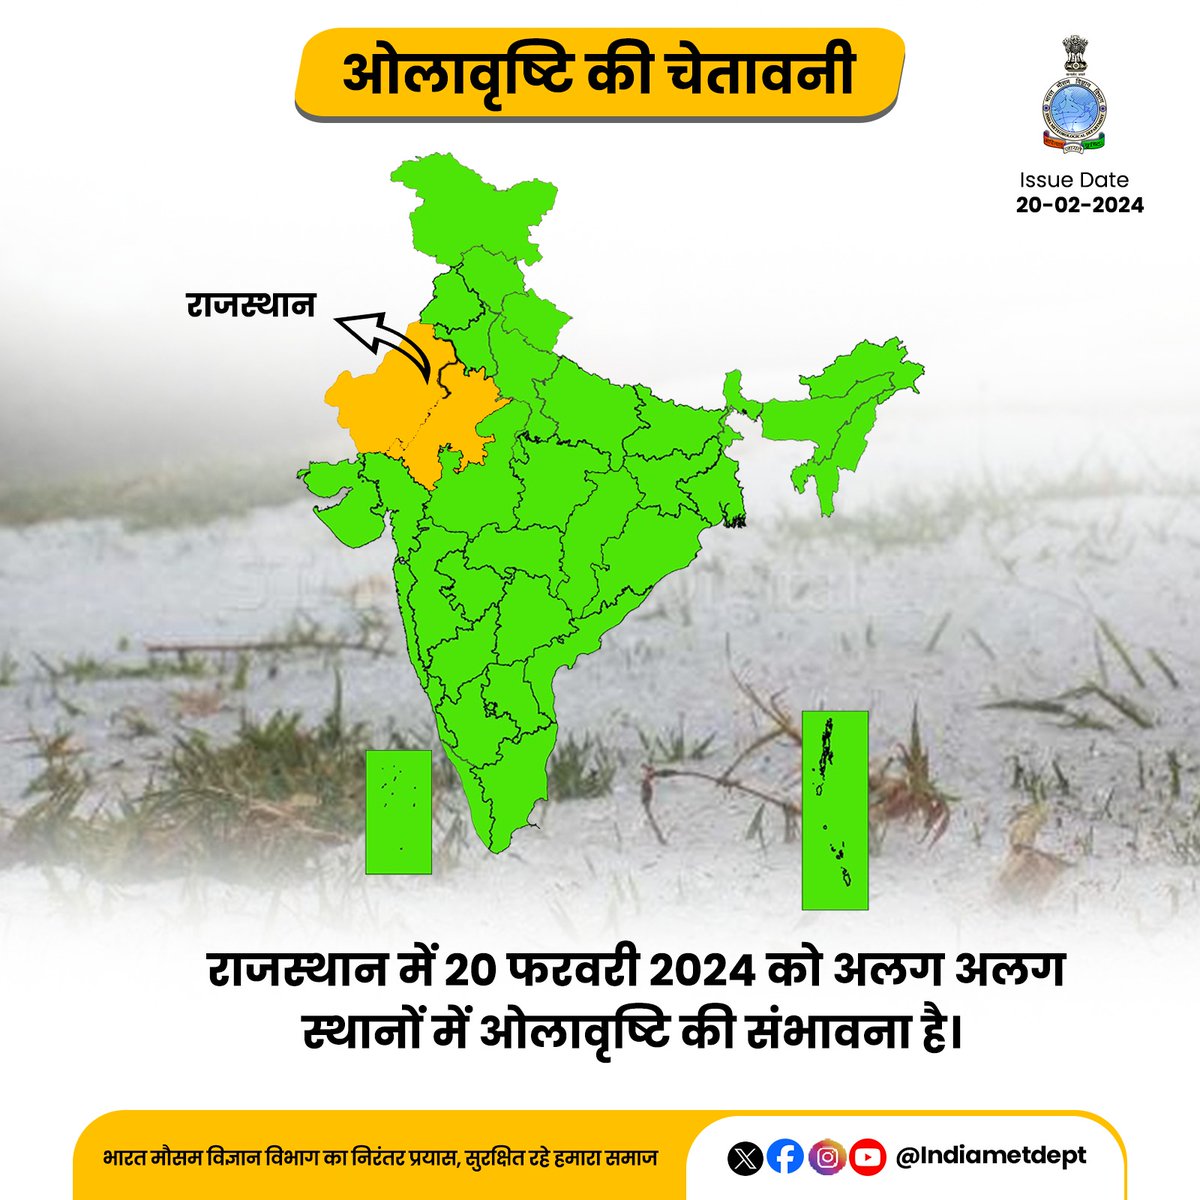 राजस्थान में 20 फरवरी 2024 को अलग अलग स्थानों में ओलावृष्टि की संभावना है।

#RajasthanWeather #hailstormAlert

@AAI_Official @dgcaindia @railminindia
@nhai_official @moesgoi @DDNewslive
@ndmaindia @airnewsalerts @DIPRRajasthan
@IMDJaipur